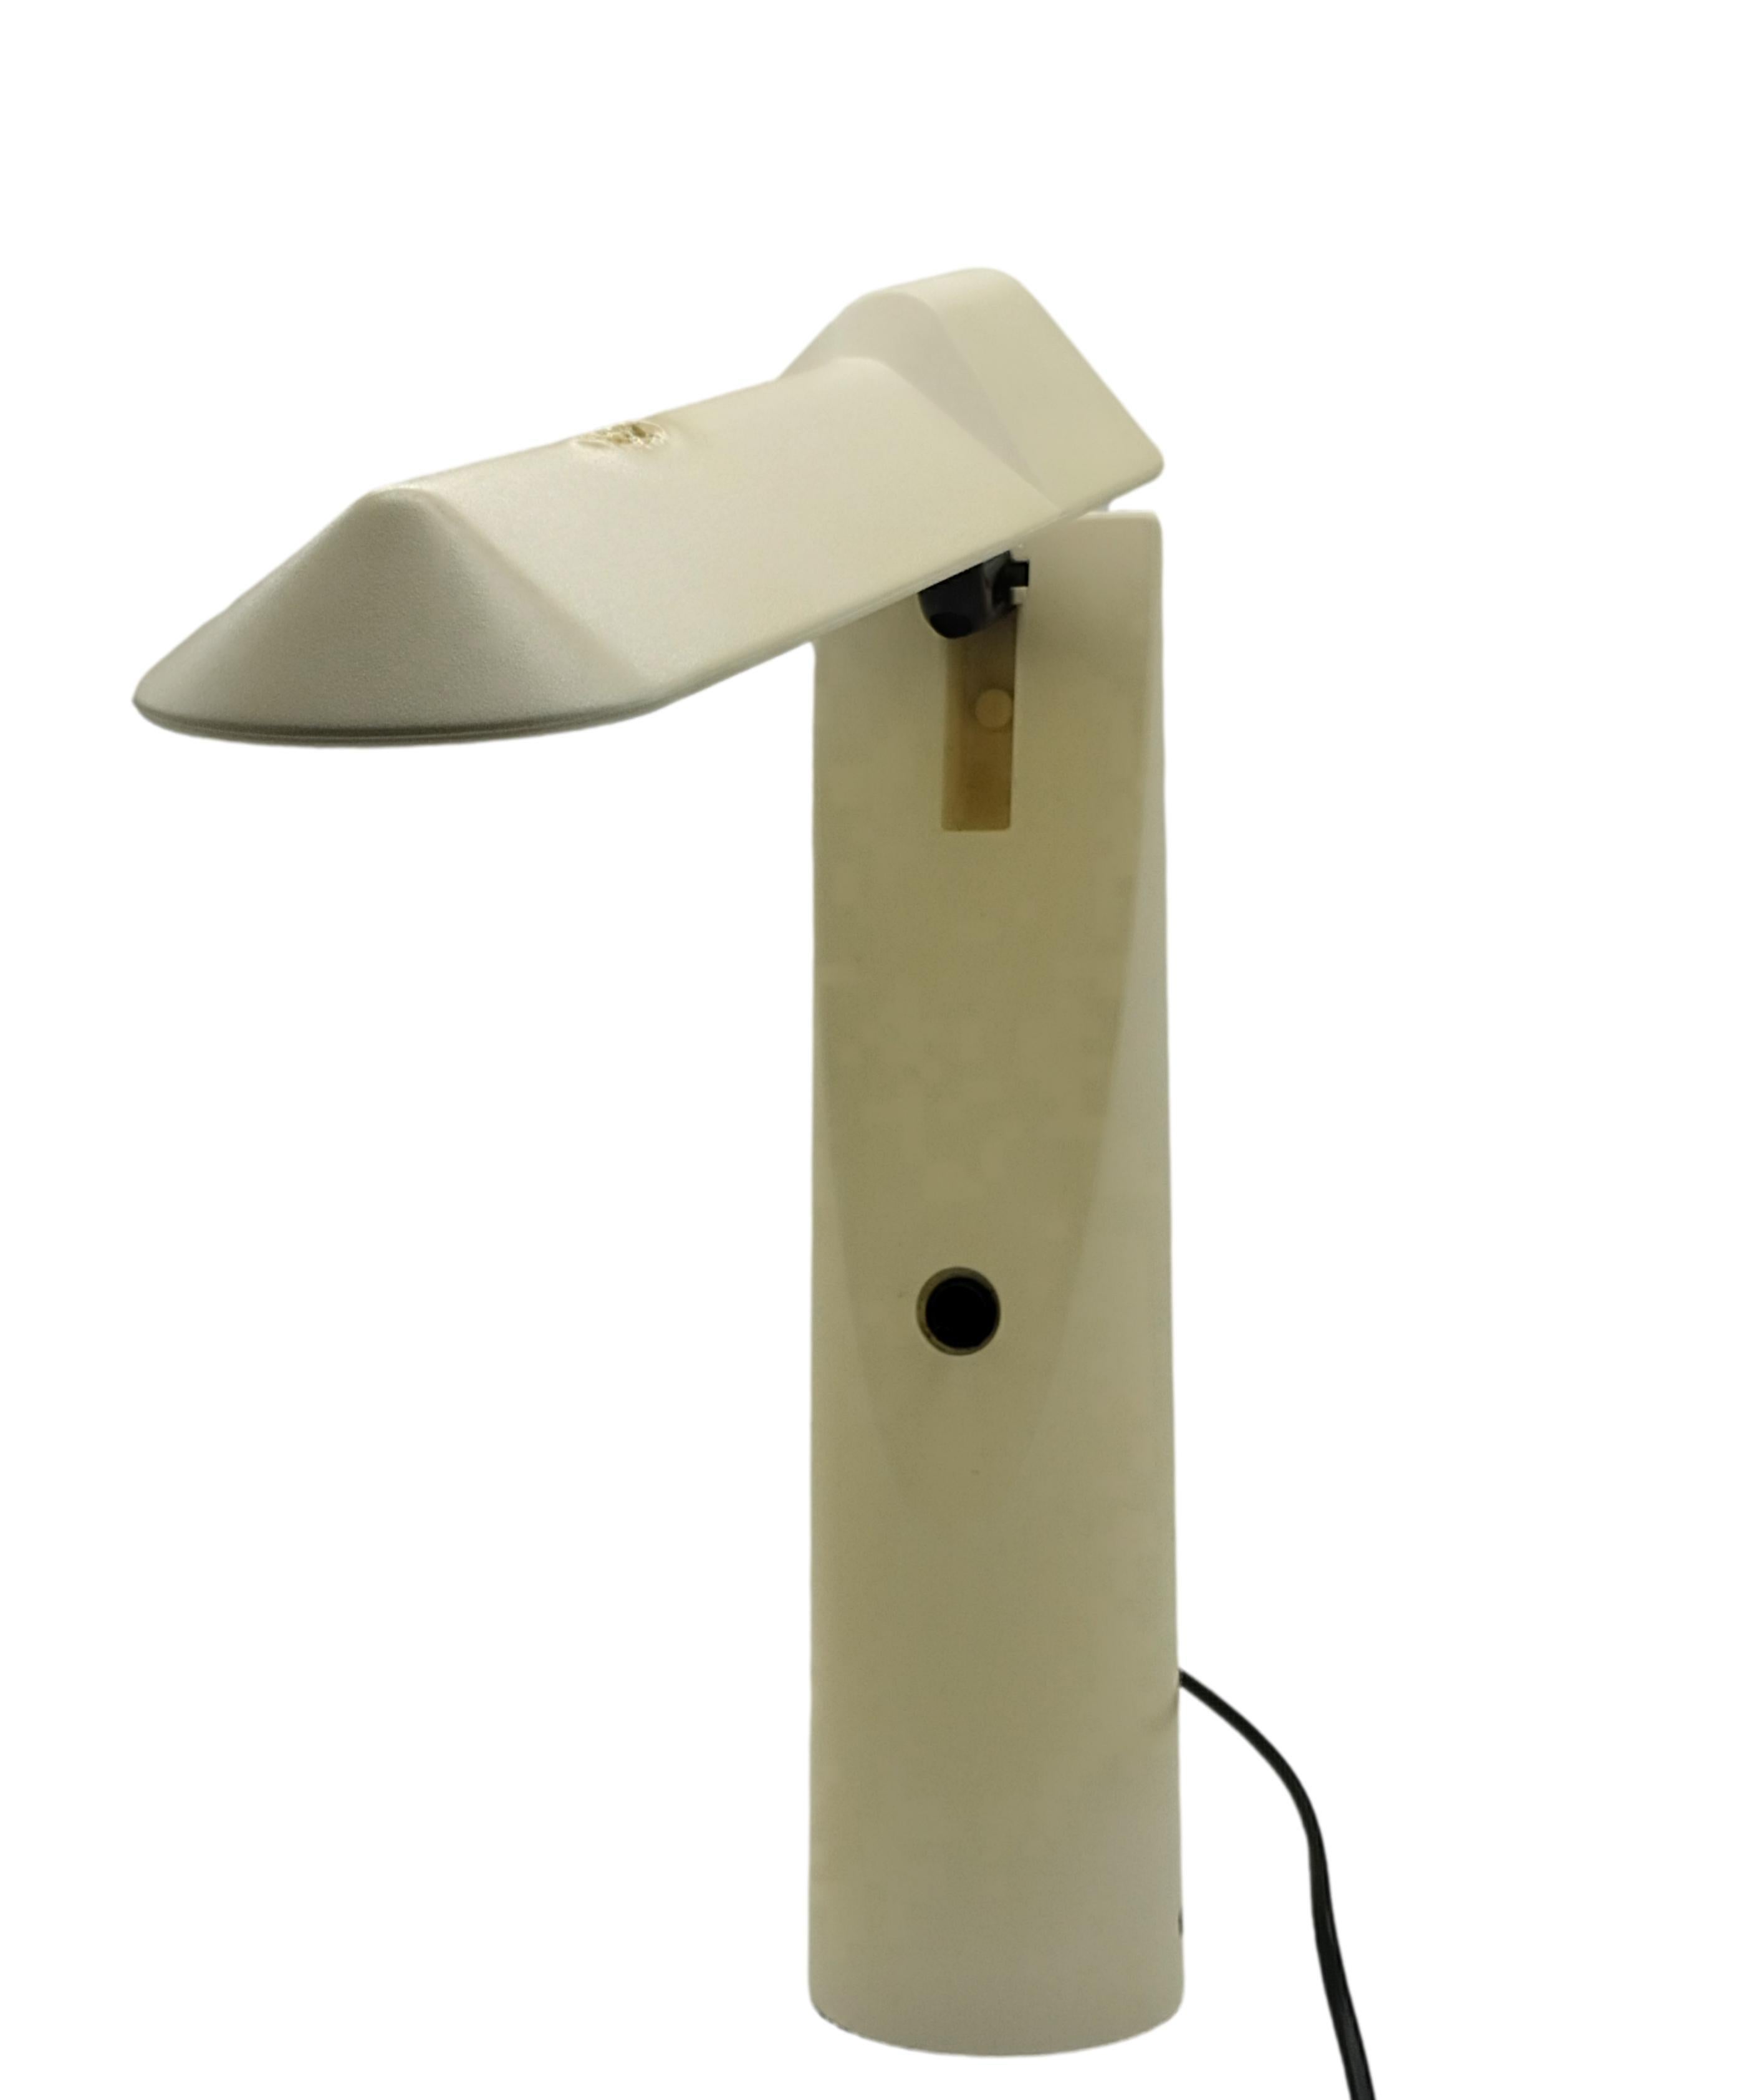 
Lampe de table Picchio du designer japonais Isao Hosoe, produite par Luxo Italiana en 1984.
Lampe de table élégante et fonctionnelle en ABS.
 La partie supérieure de la lampe Picchio est entièrement réglable, renferme un réflecteur en aluminium et